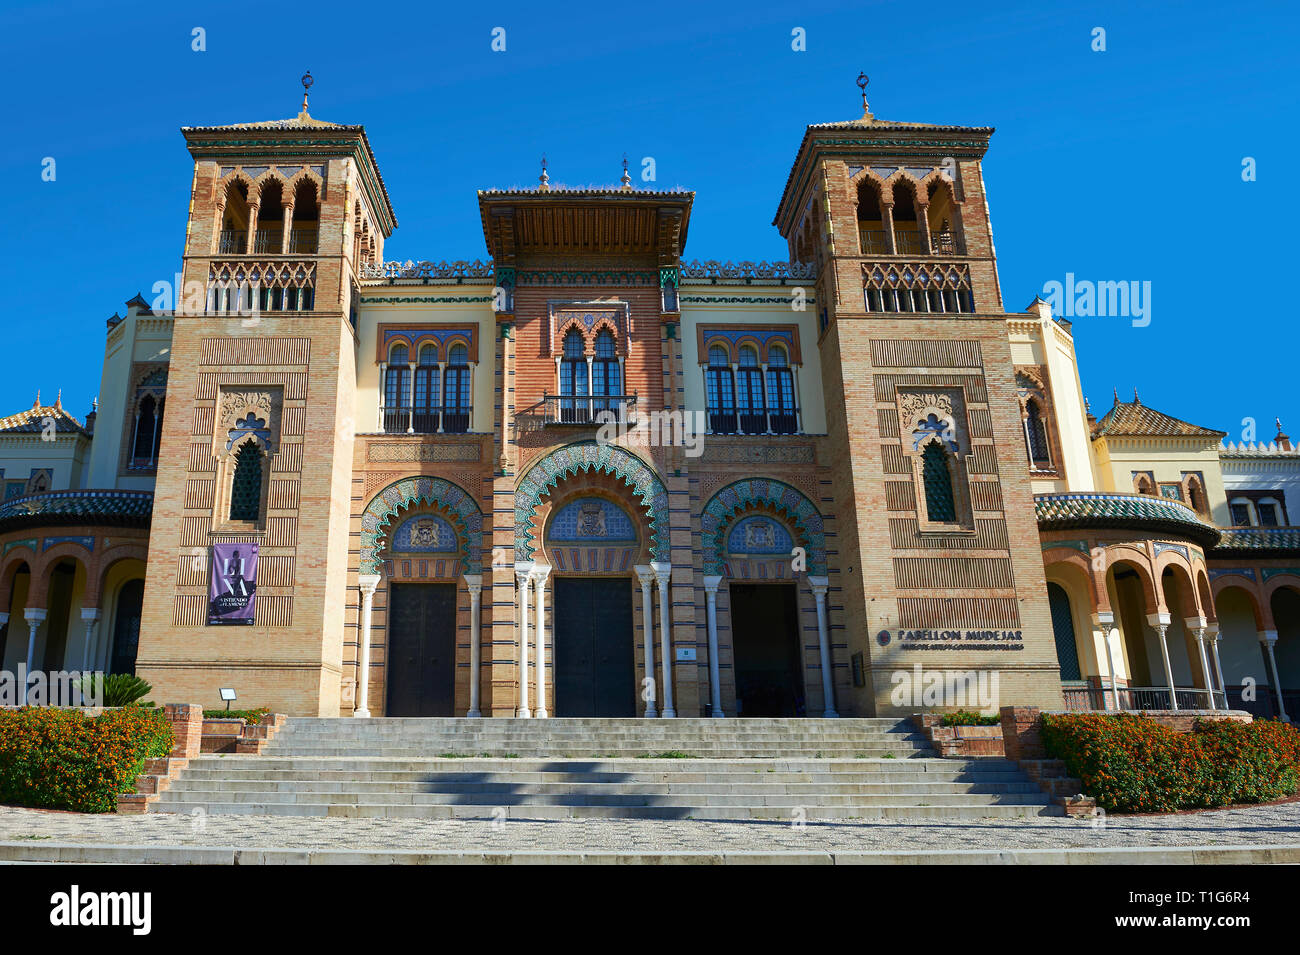 L'arabesque architecture du Musée des Arts et Traditions Nord square, Séville Espagne Banque D'Images